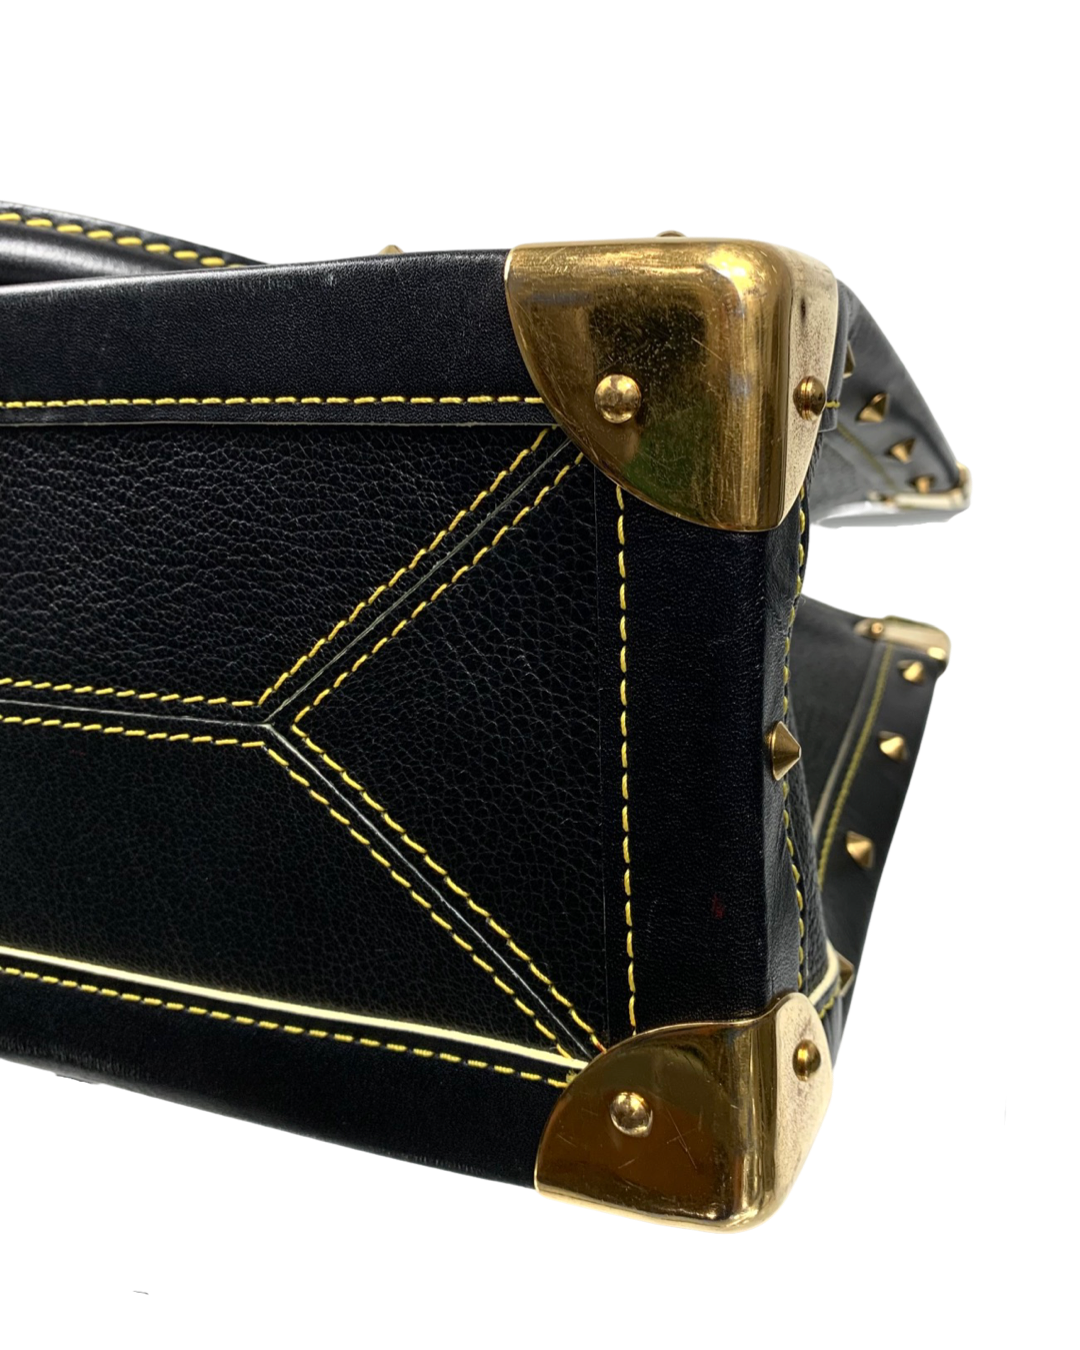 Louis Vuitton Suhali Le Fabuleux Leather Handbag